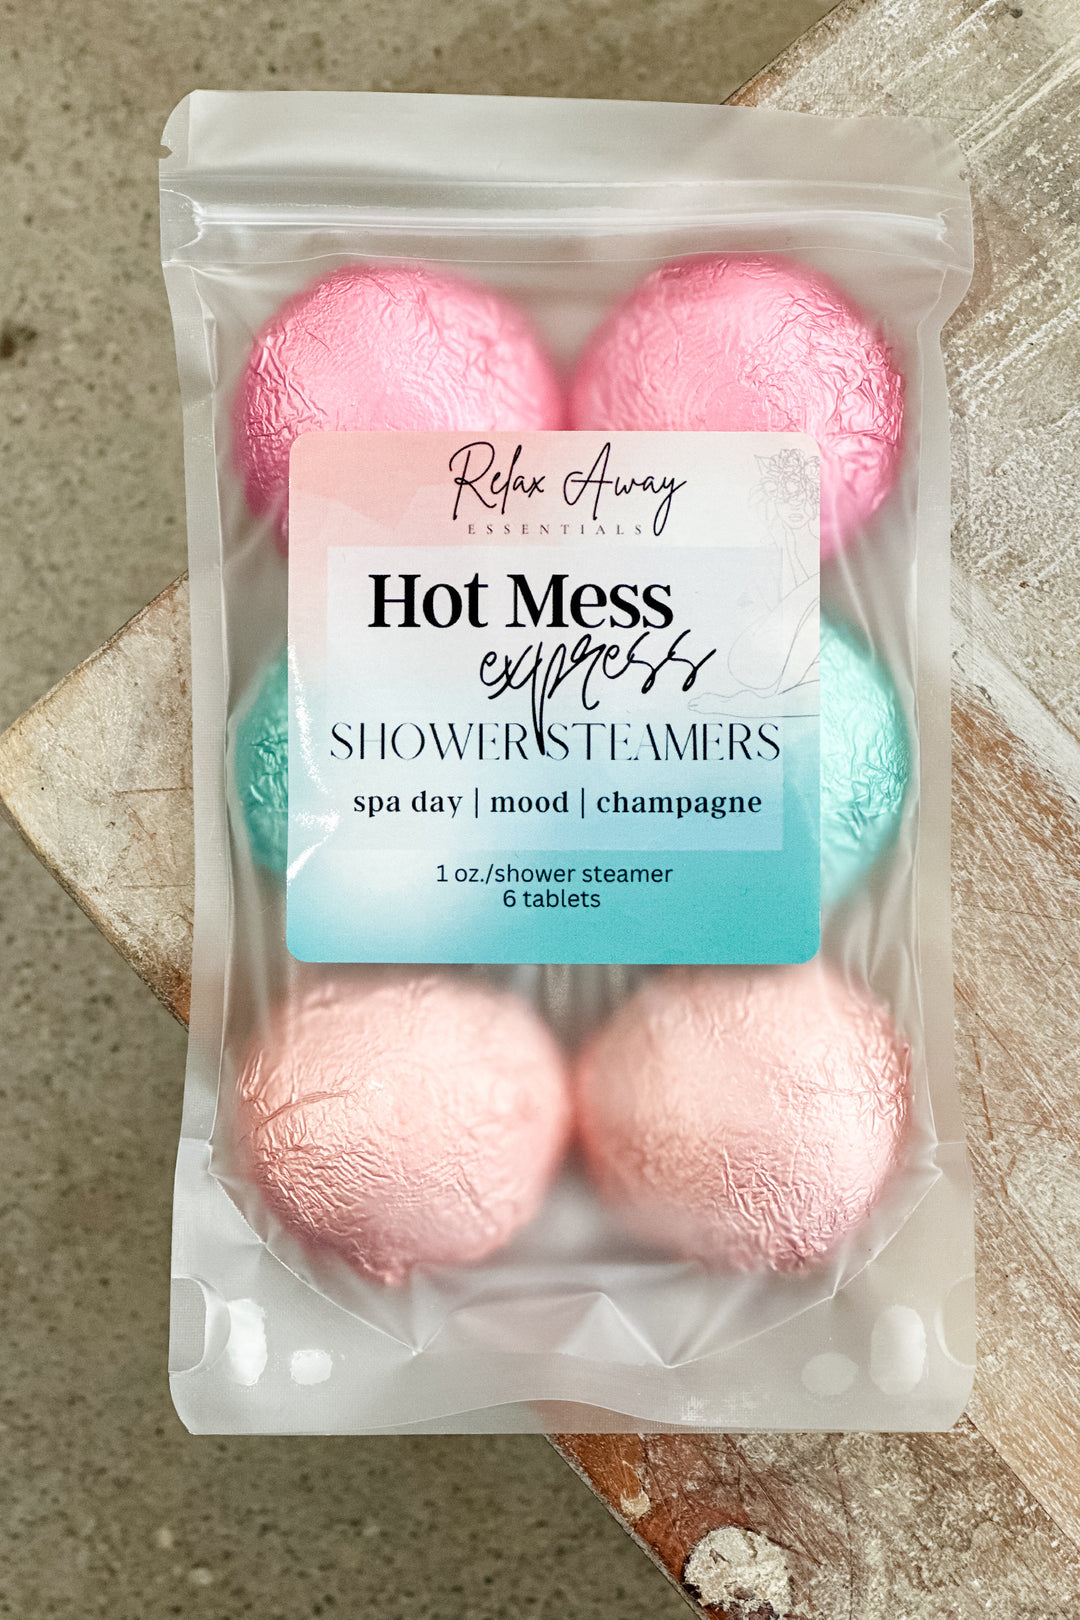 Hot Mess Express Shower Steamer Pack